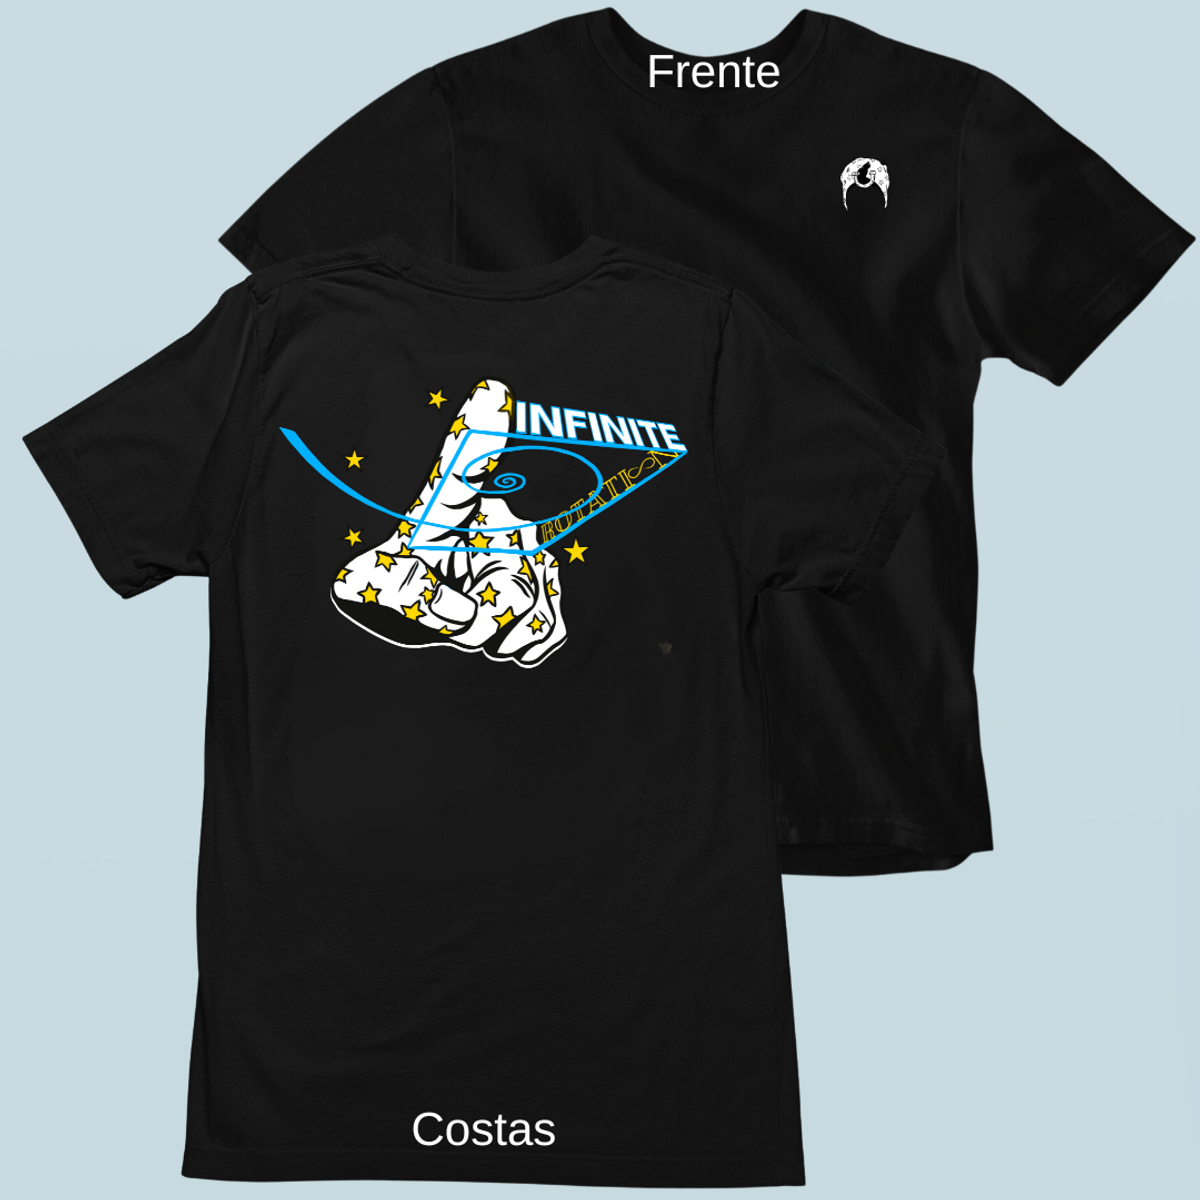 Nome do produto: Camiseta Johnny Infinite Frente Costas